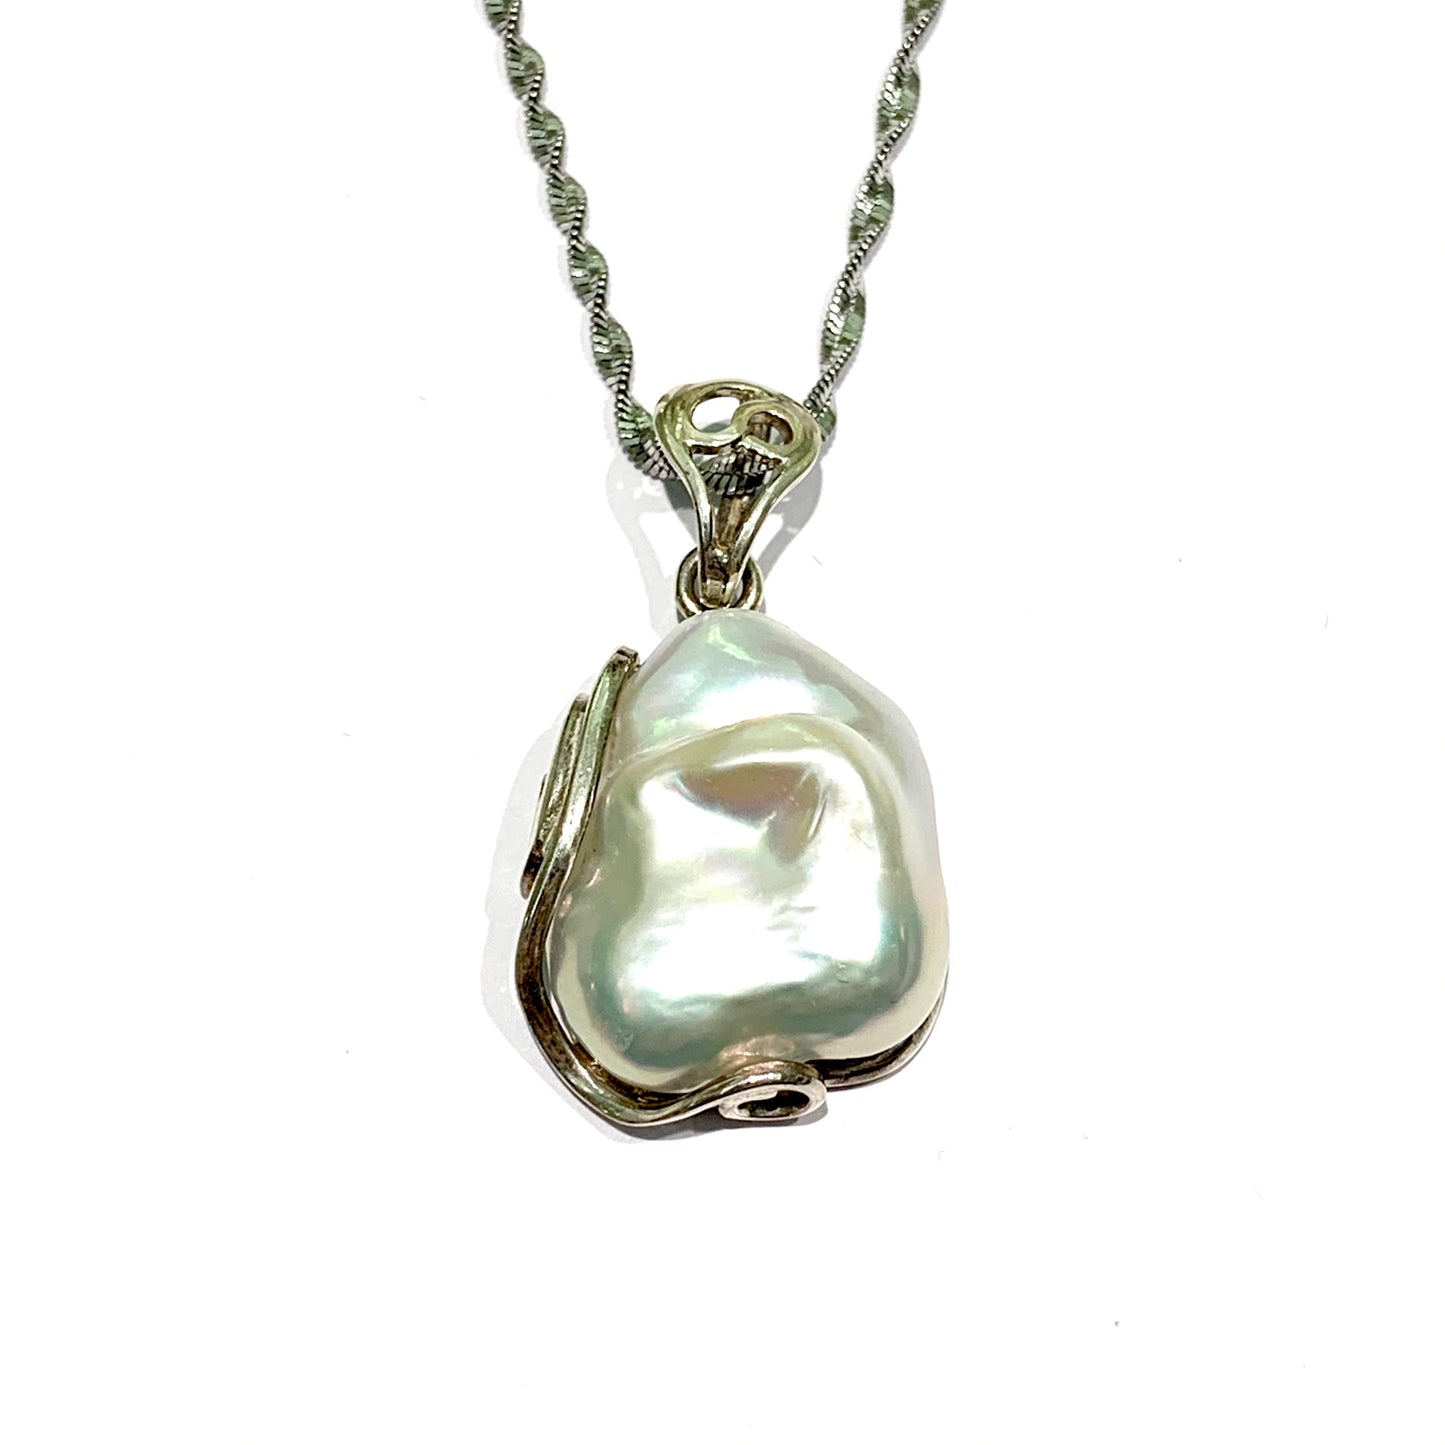 Catena in argento con perla scaramazza.  Lunghezza catena 50 cm.  Dimensioni perla 2,5x1,5 cm.  Spedizione gratuita con confezione regalo.